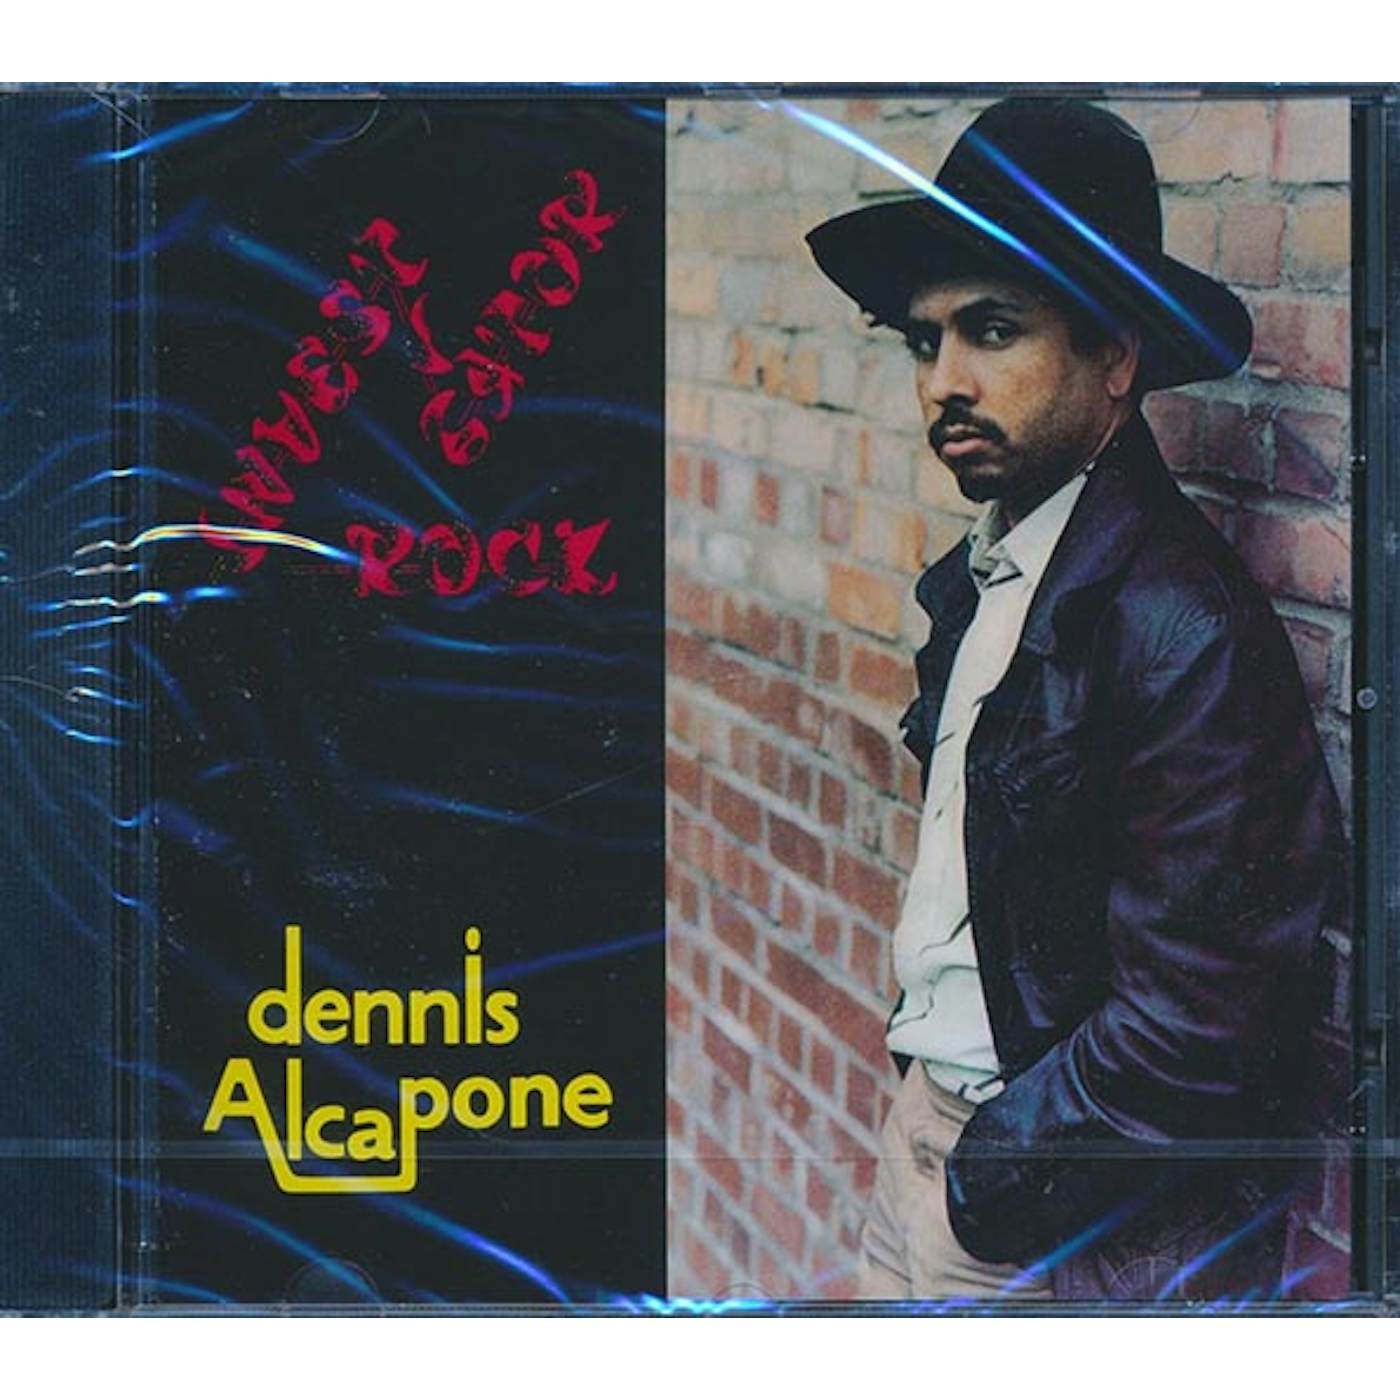 Dennis Alcapone CD - Investigator Rock